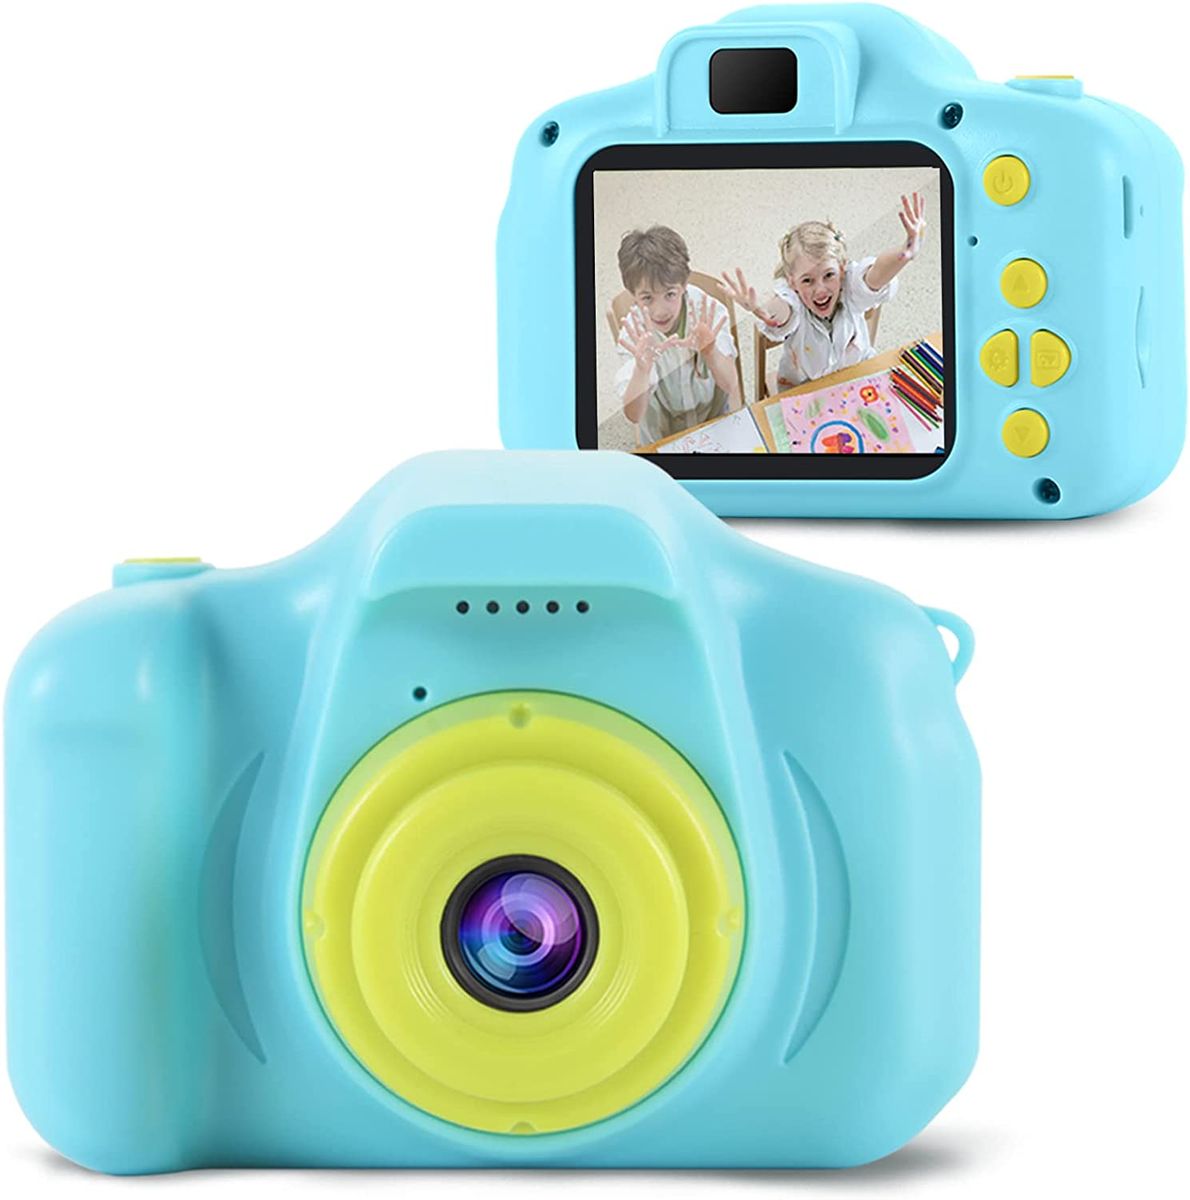 OMWay Kamera Kinder ab 3 4 5,Fotokamera Kinder,OMWay Kinderspielzeug Geschenke für 6-8 Jahre,HD 1080P Fotoapparat Digitalkamera,Weihnachten Geburtstag Spielzeug Kinderkamera ab 3-8 Jährige Junge(Blau) 3-Blau